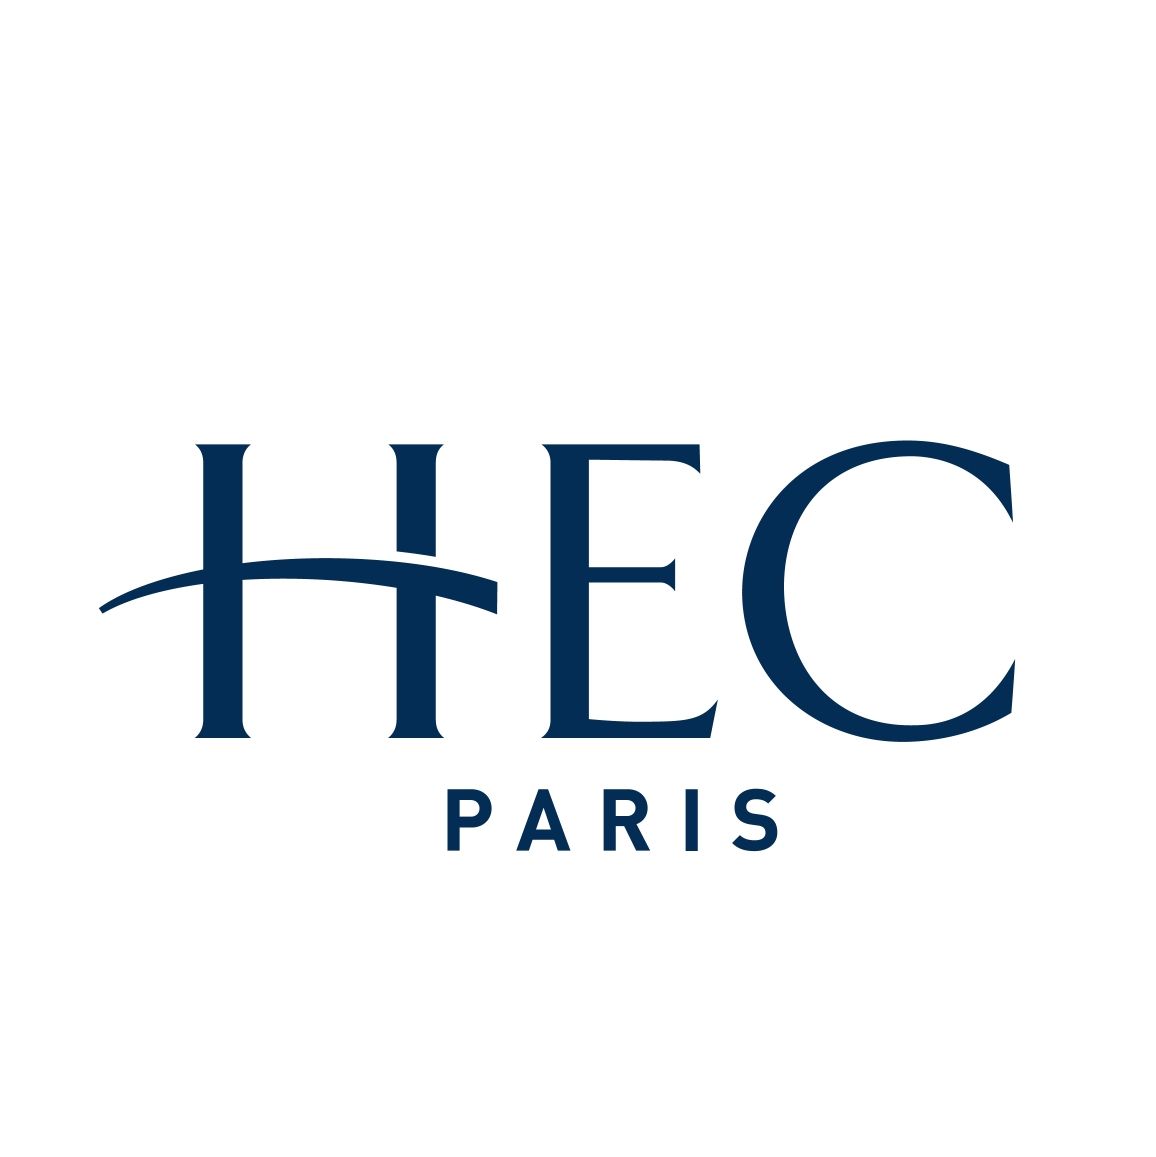 HEC Paris - #1 European Business School